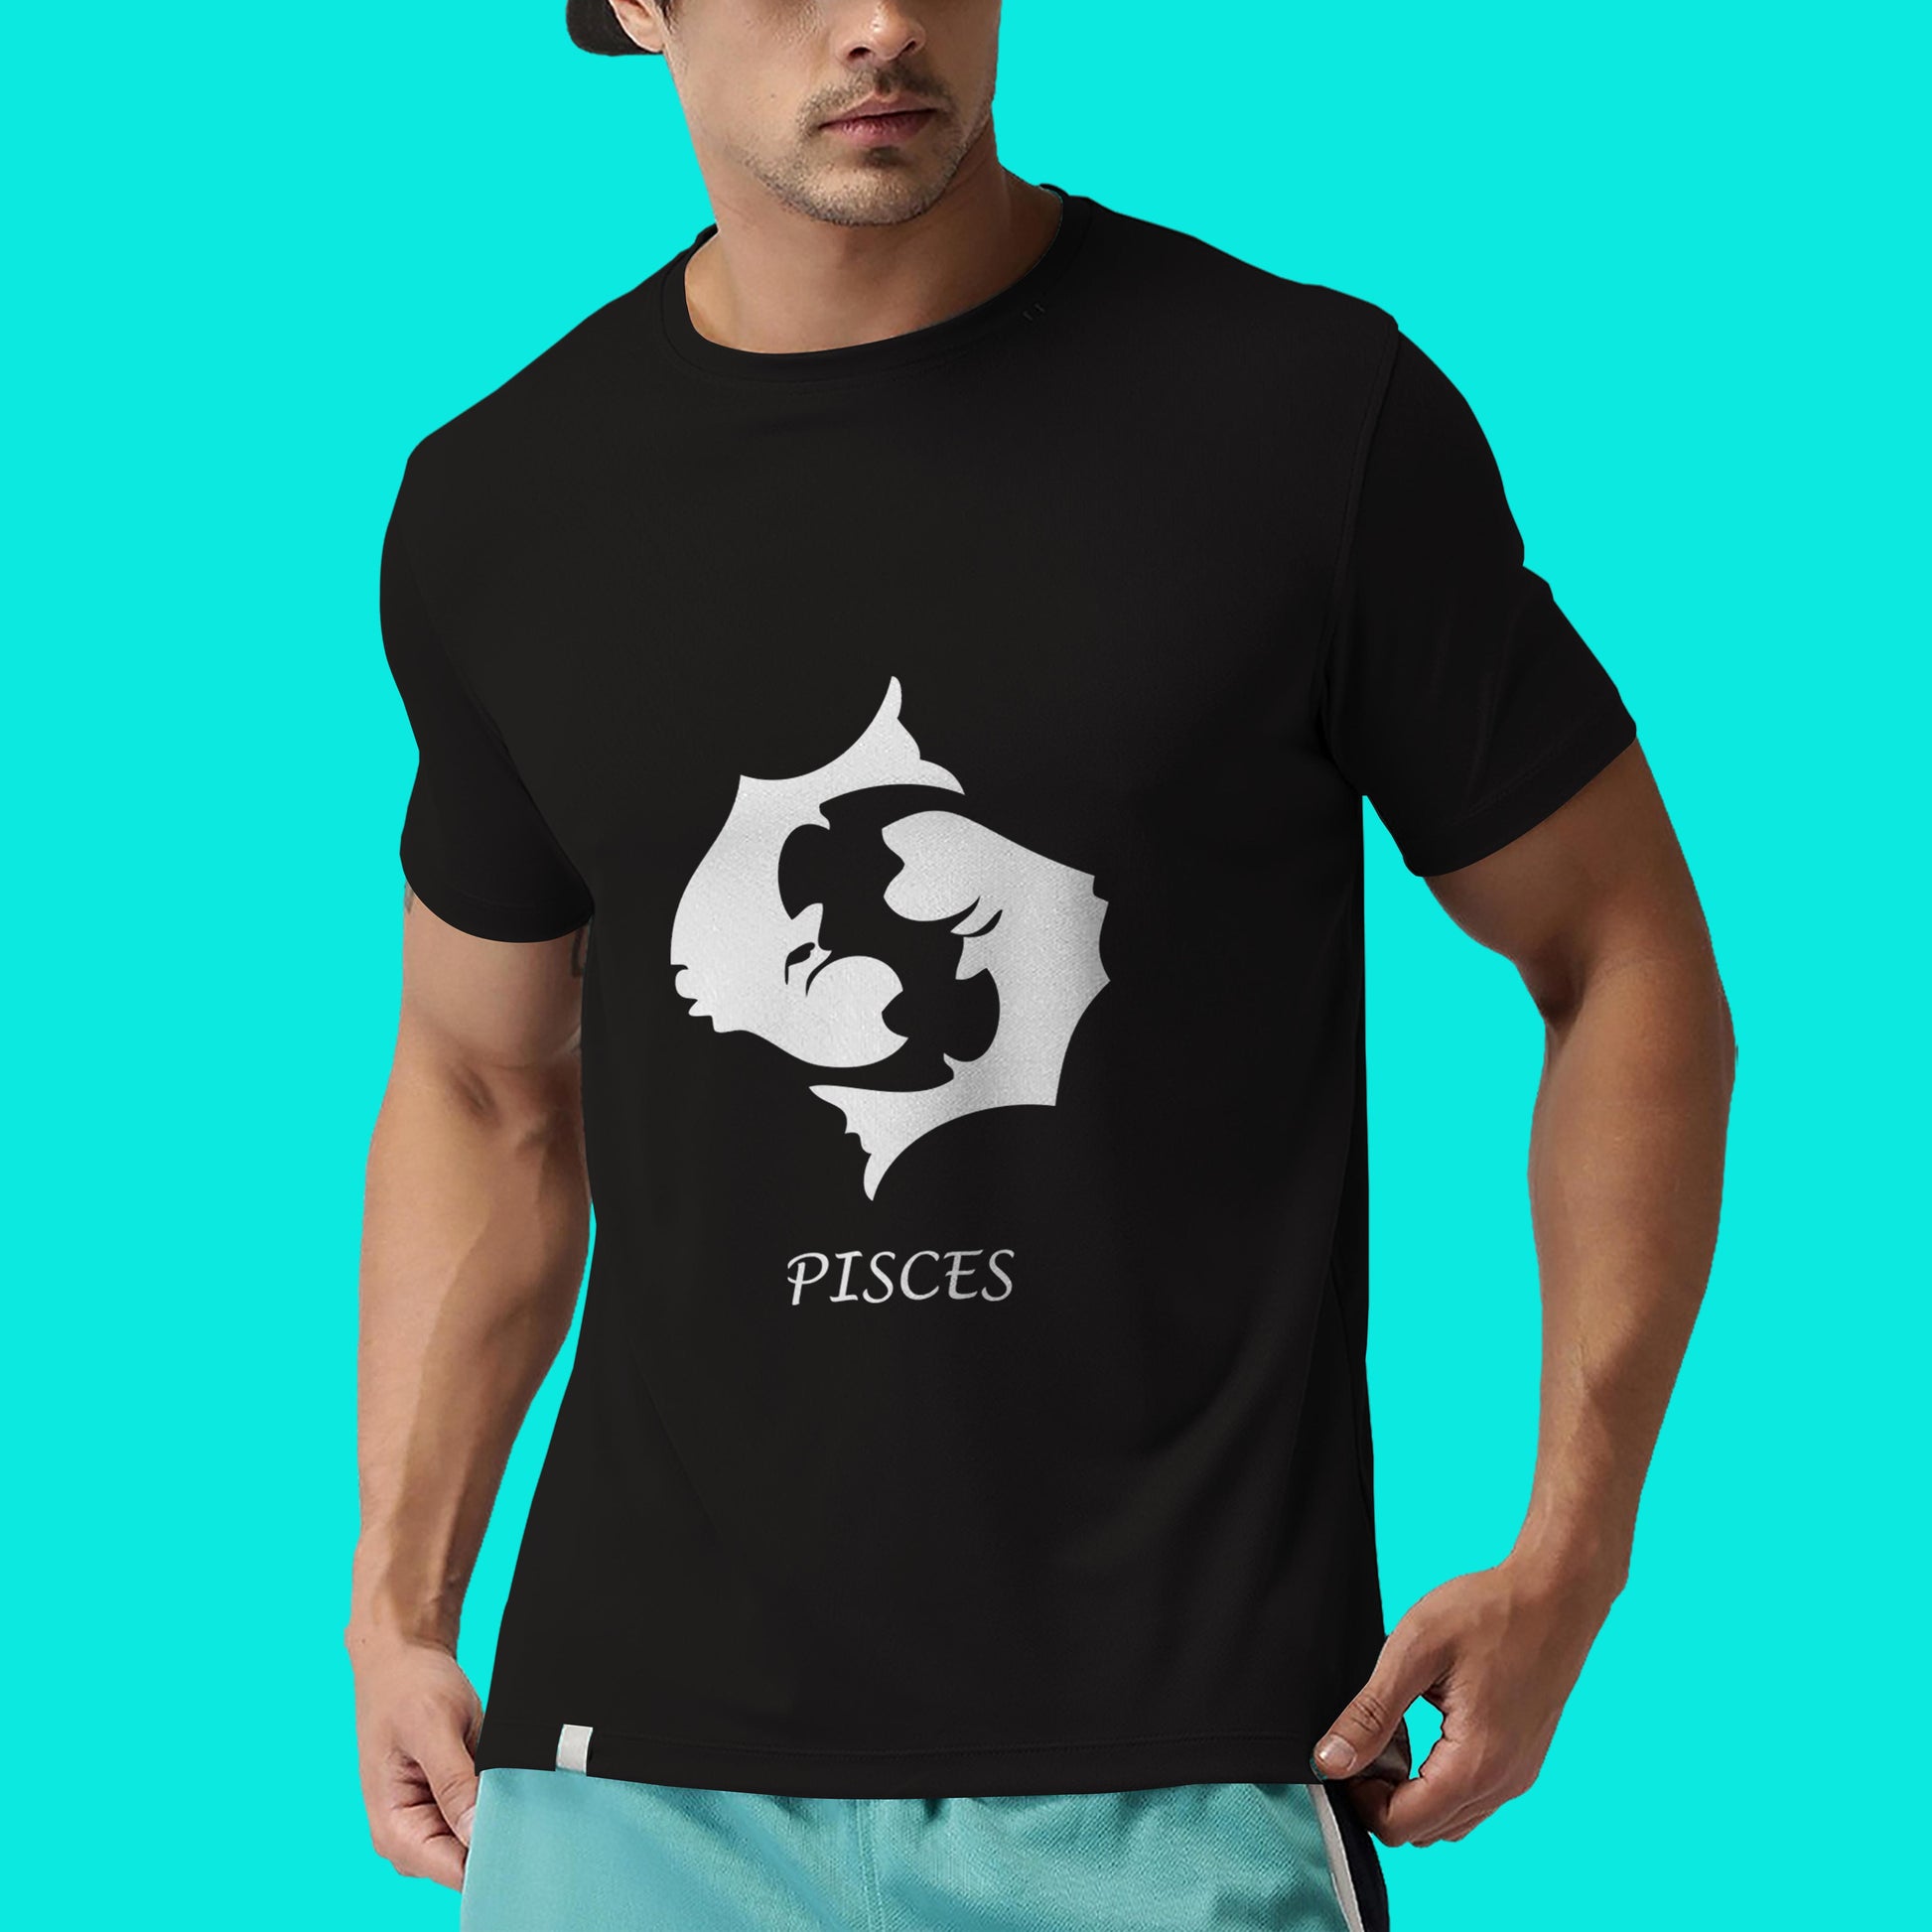 Pisces zodiac sign tshirt, Personality tshirt, Astrology tshirt- Black